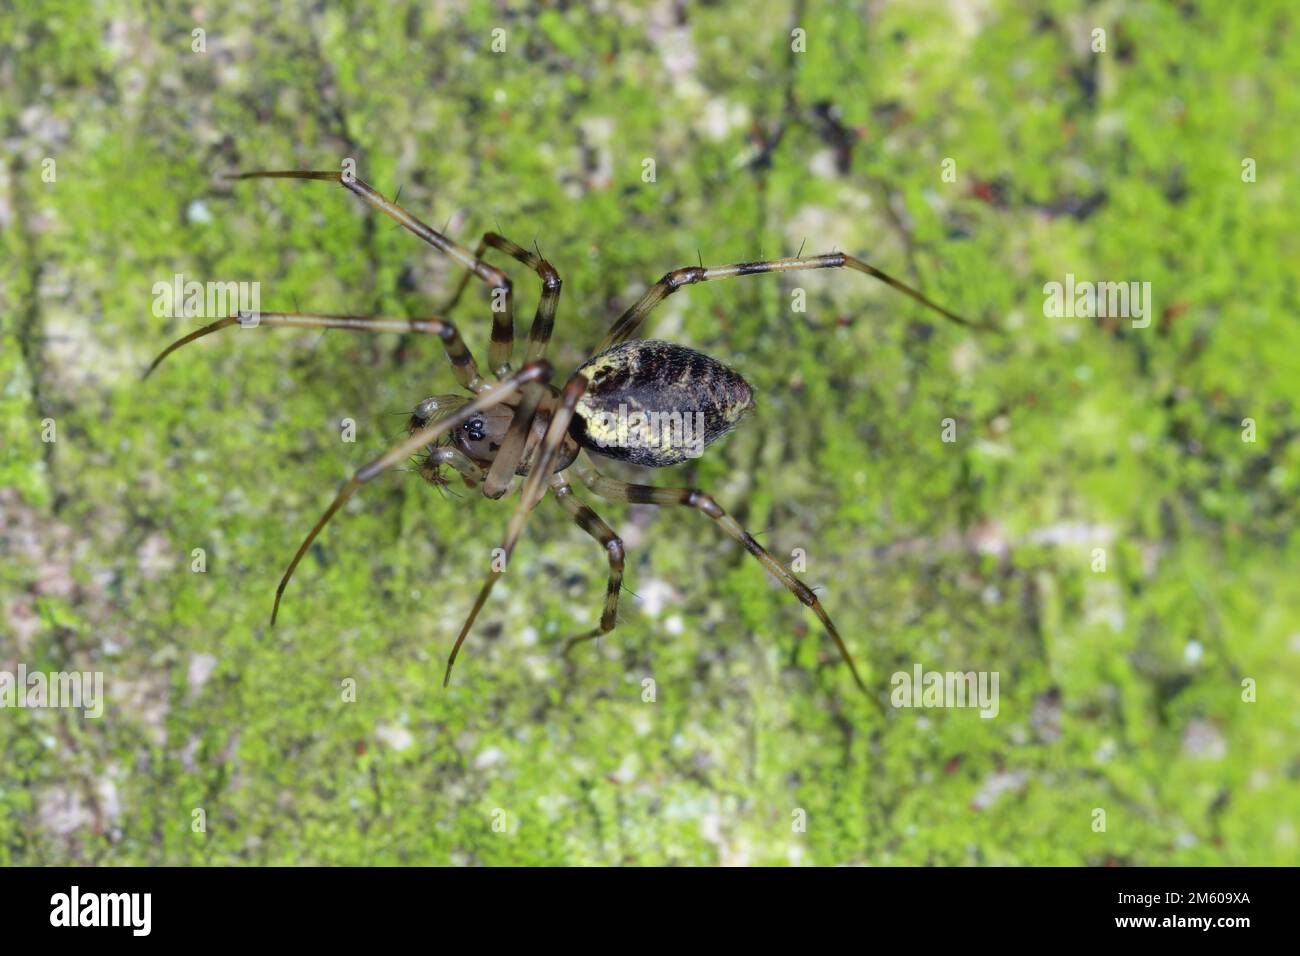 Une araignée forestière sur le bois d'un arbre. Un prédateur qui se nourrit d'autres petits invertébrés. Banque D'Images